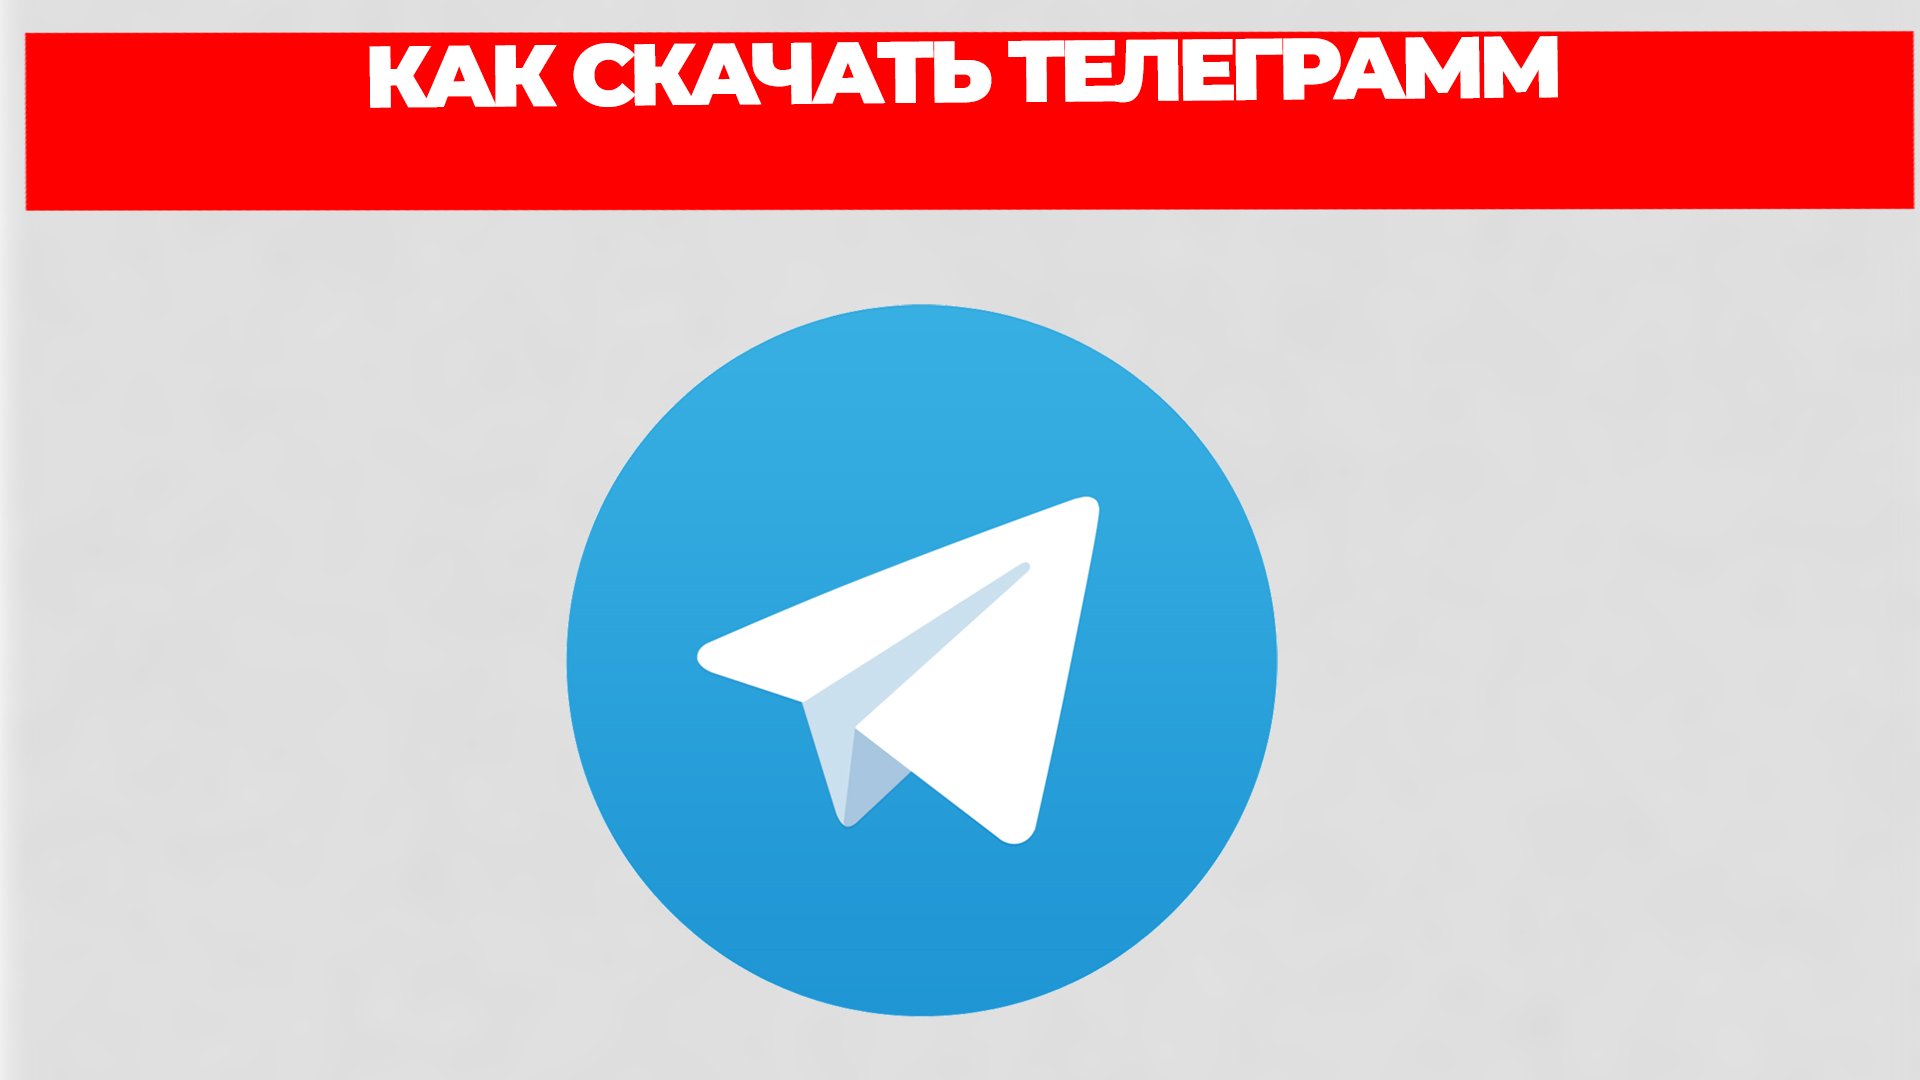 Скачать телеграмм для компьютера бесплатно на русском языке торрент фото 107